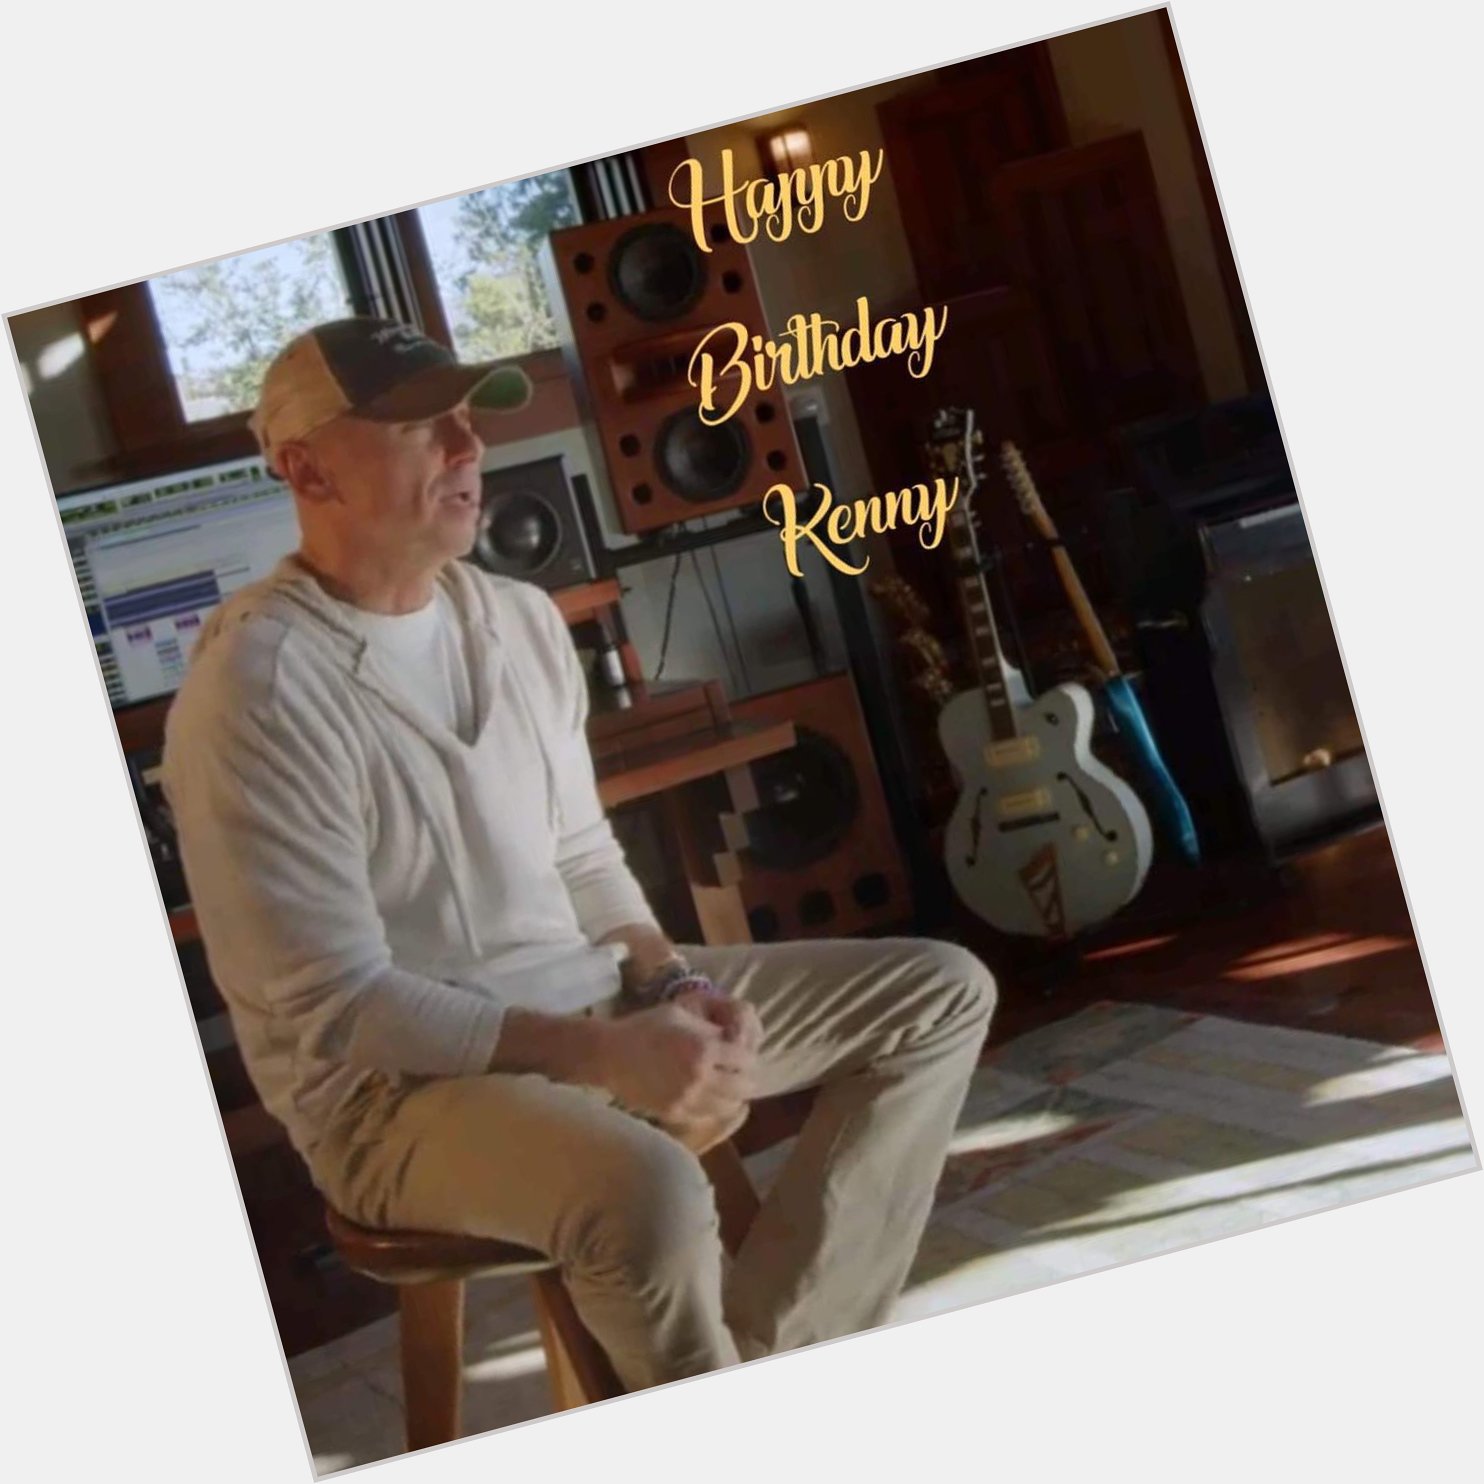 Happy Birthday Kenny Chesney!! 